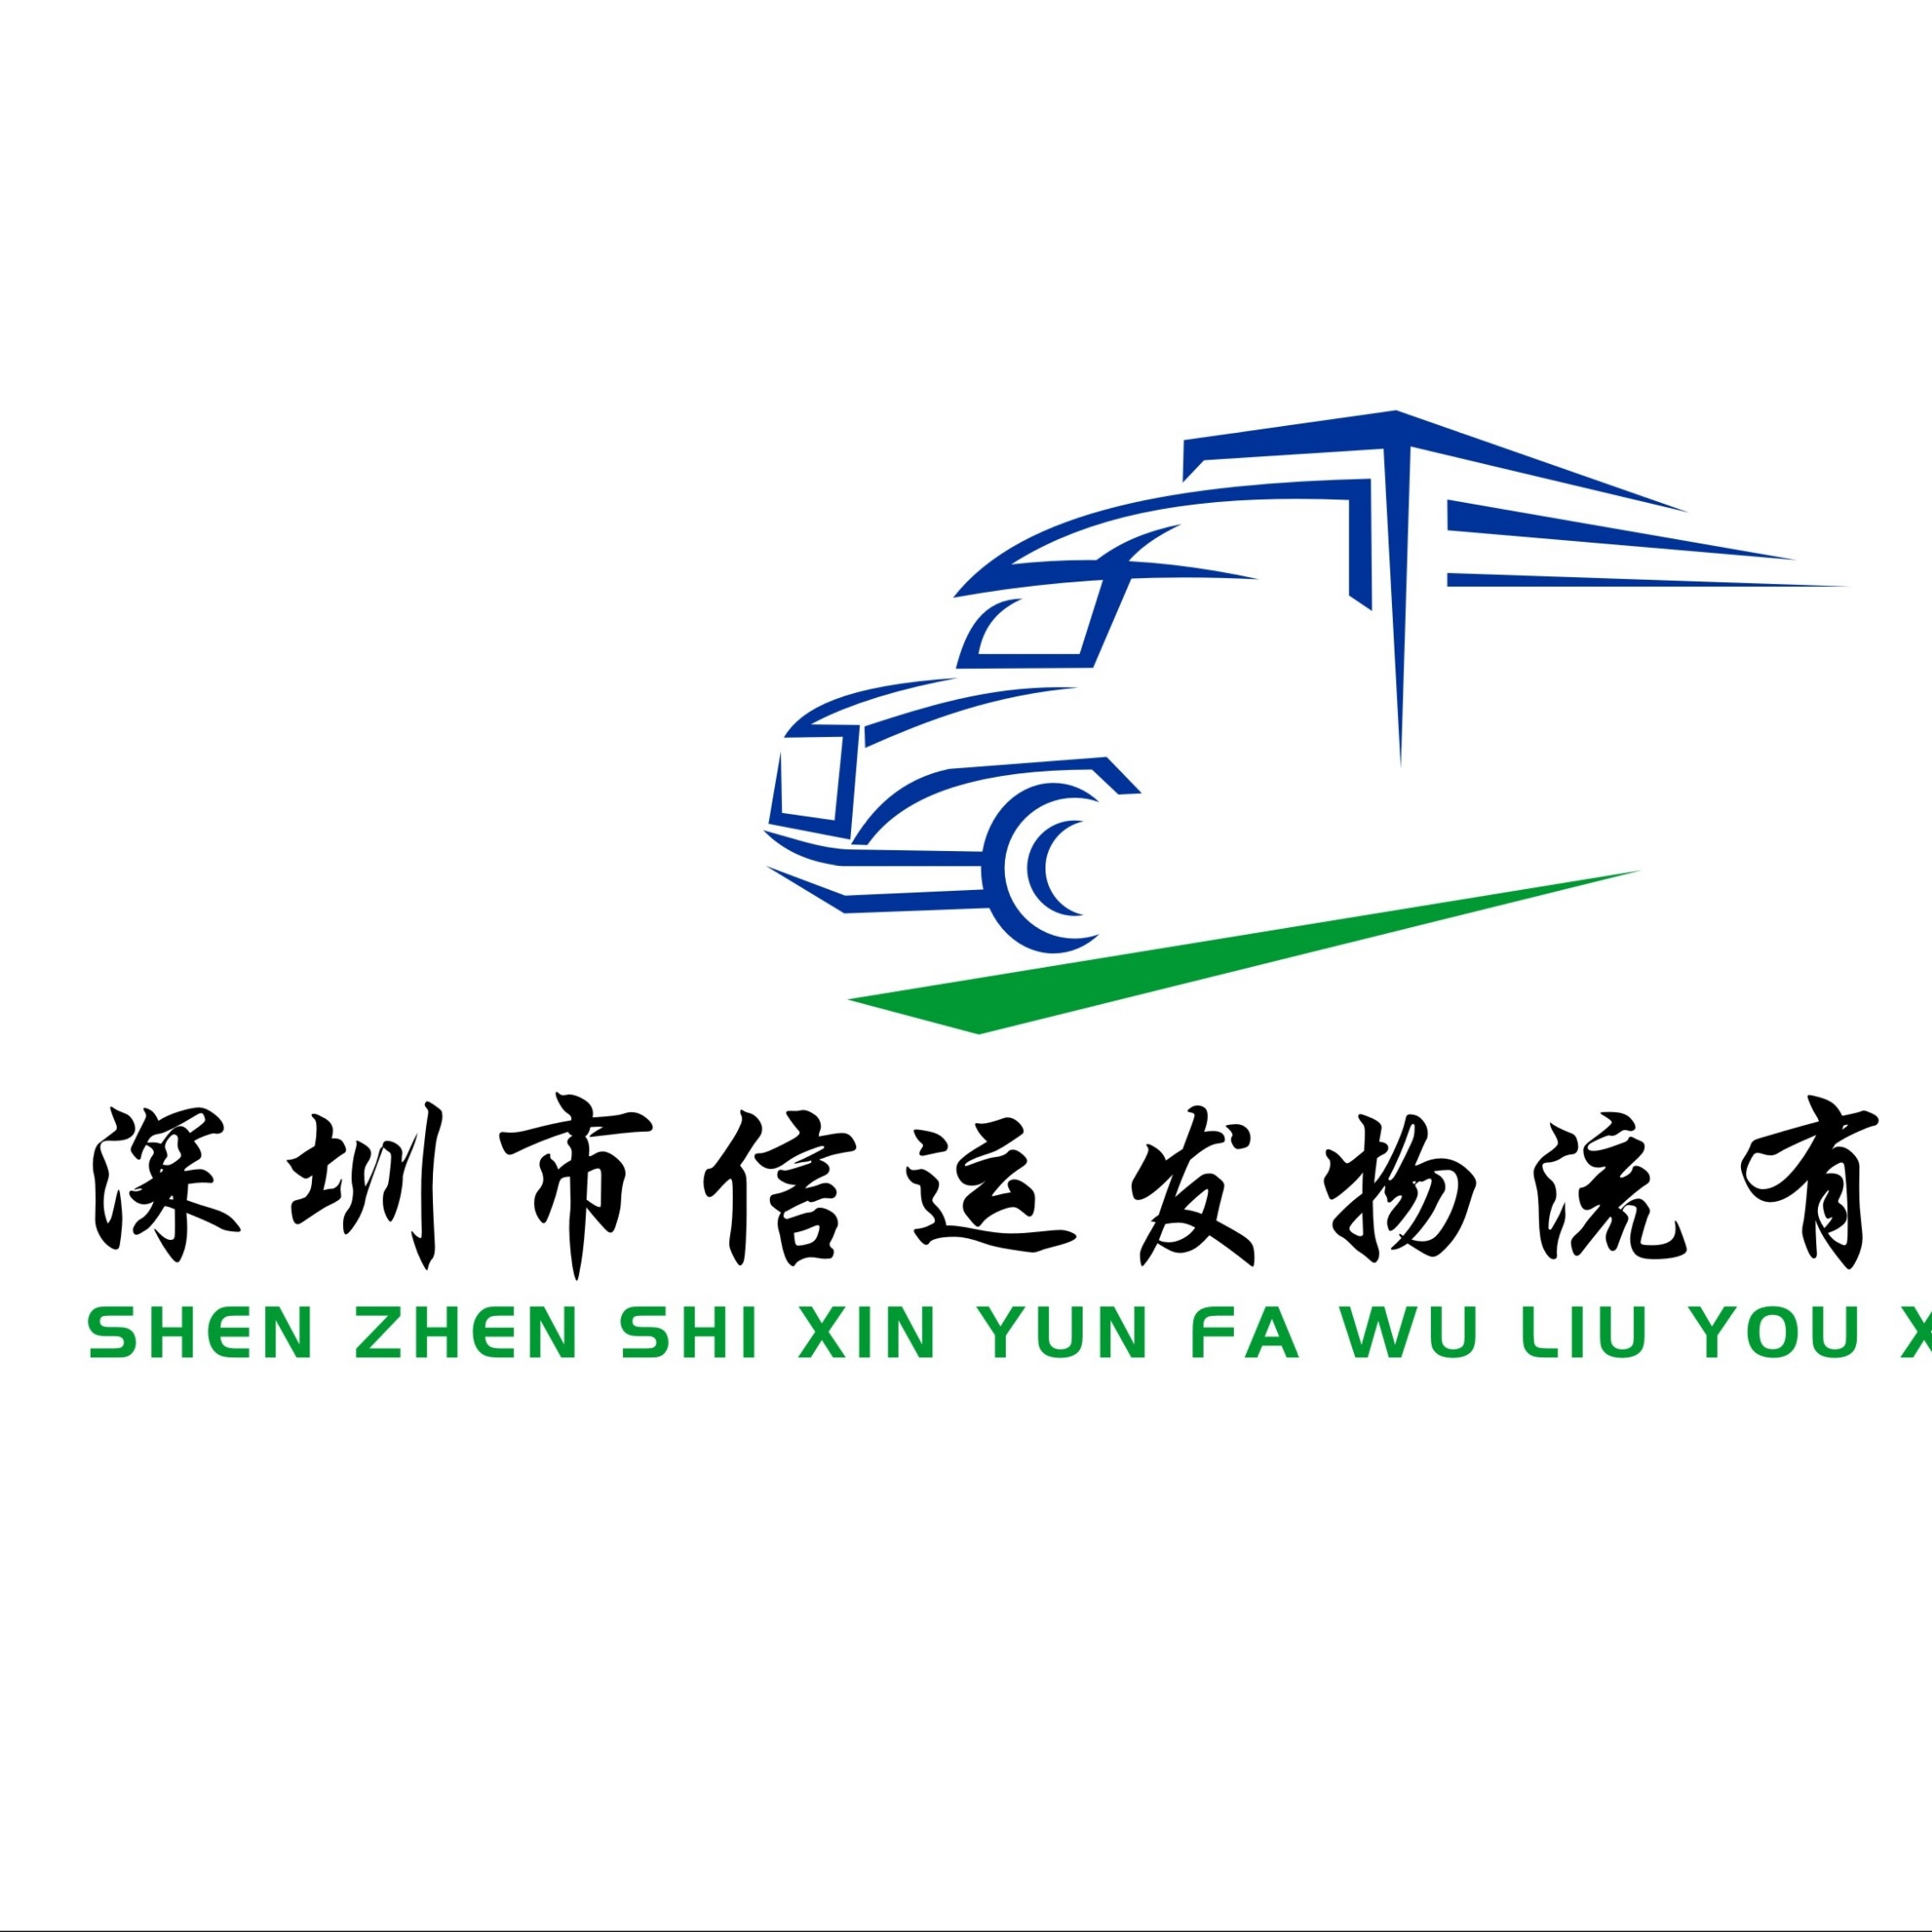 运输公司logo设计图案图片